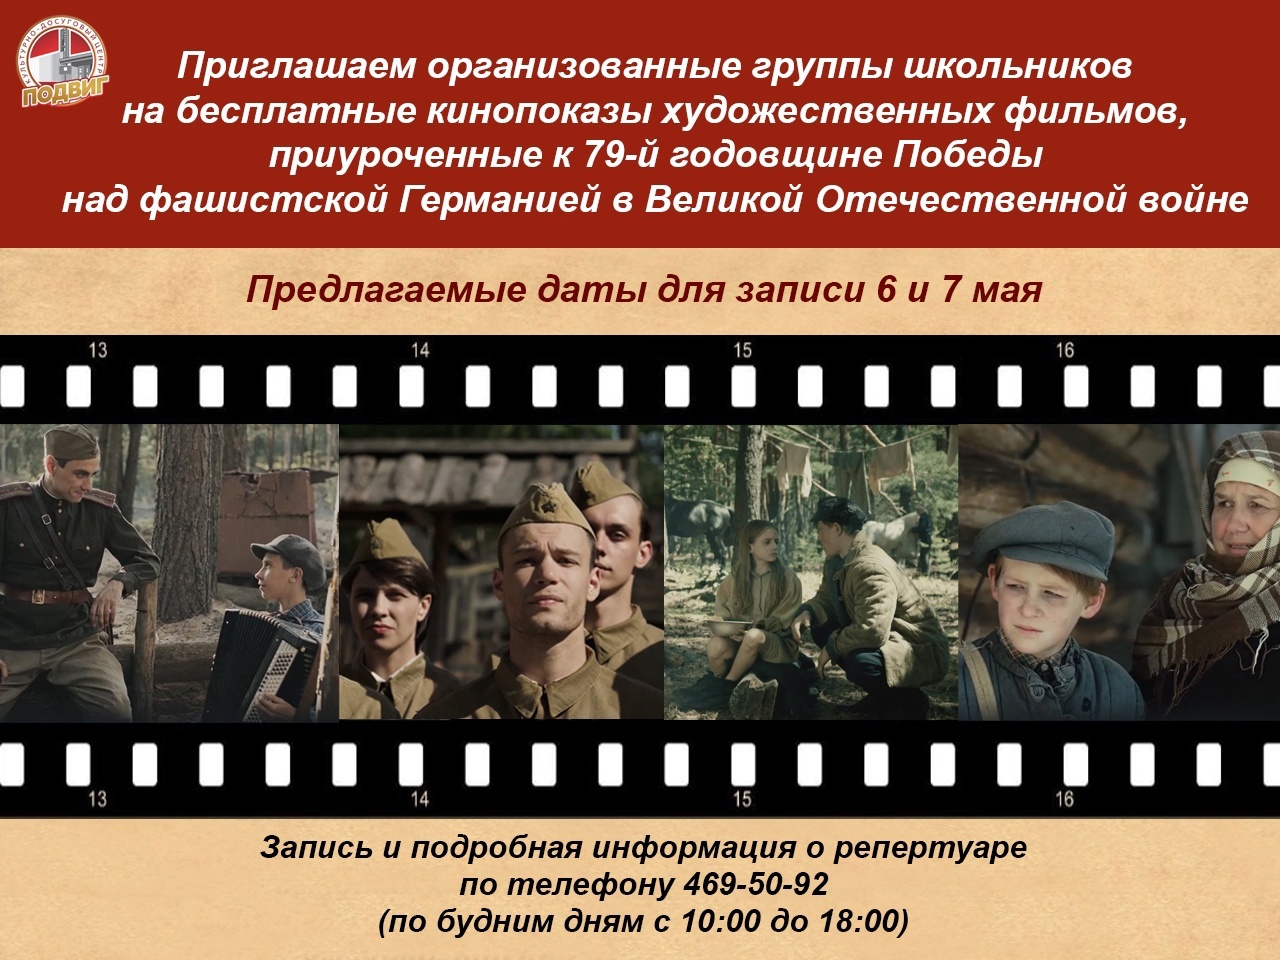 В преддверии Дня Победы культурно-досуговый центр «Подвиг» приглашает организованные группы школьников на бесплатные показы художественных фильмов.